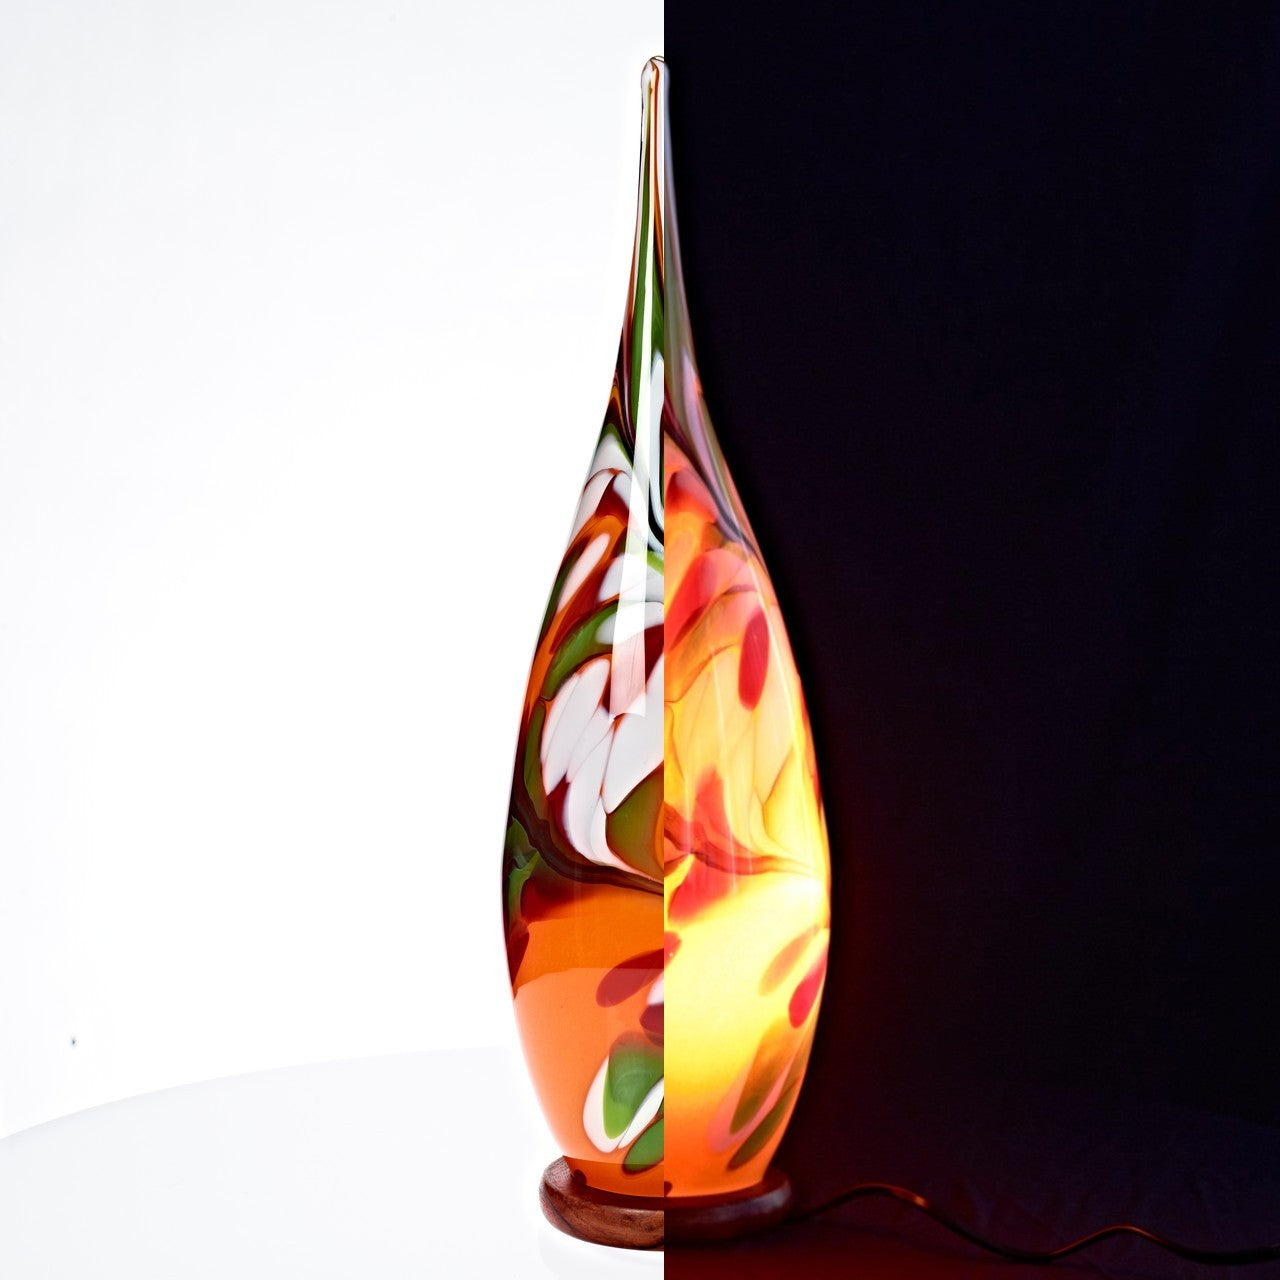 Tischlampe Beleuchtung Lichtquelle Flamme Dekoration Glas Kegel 25cm LED bunt